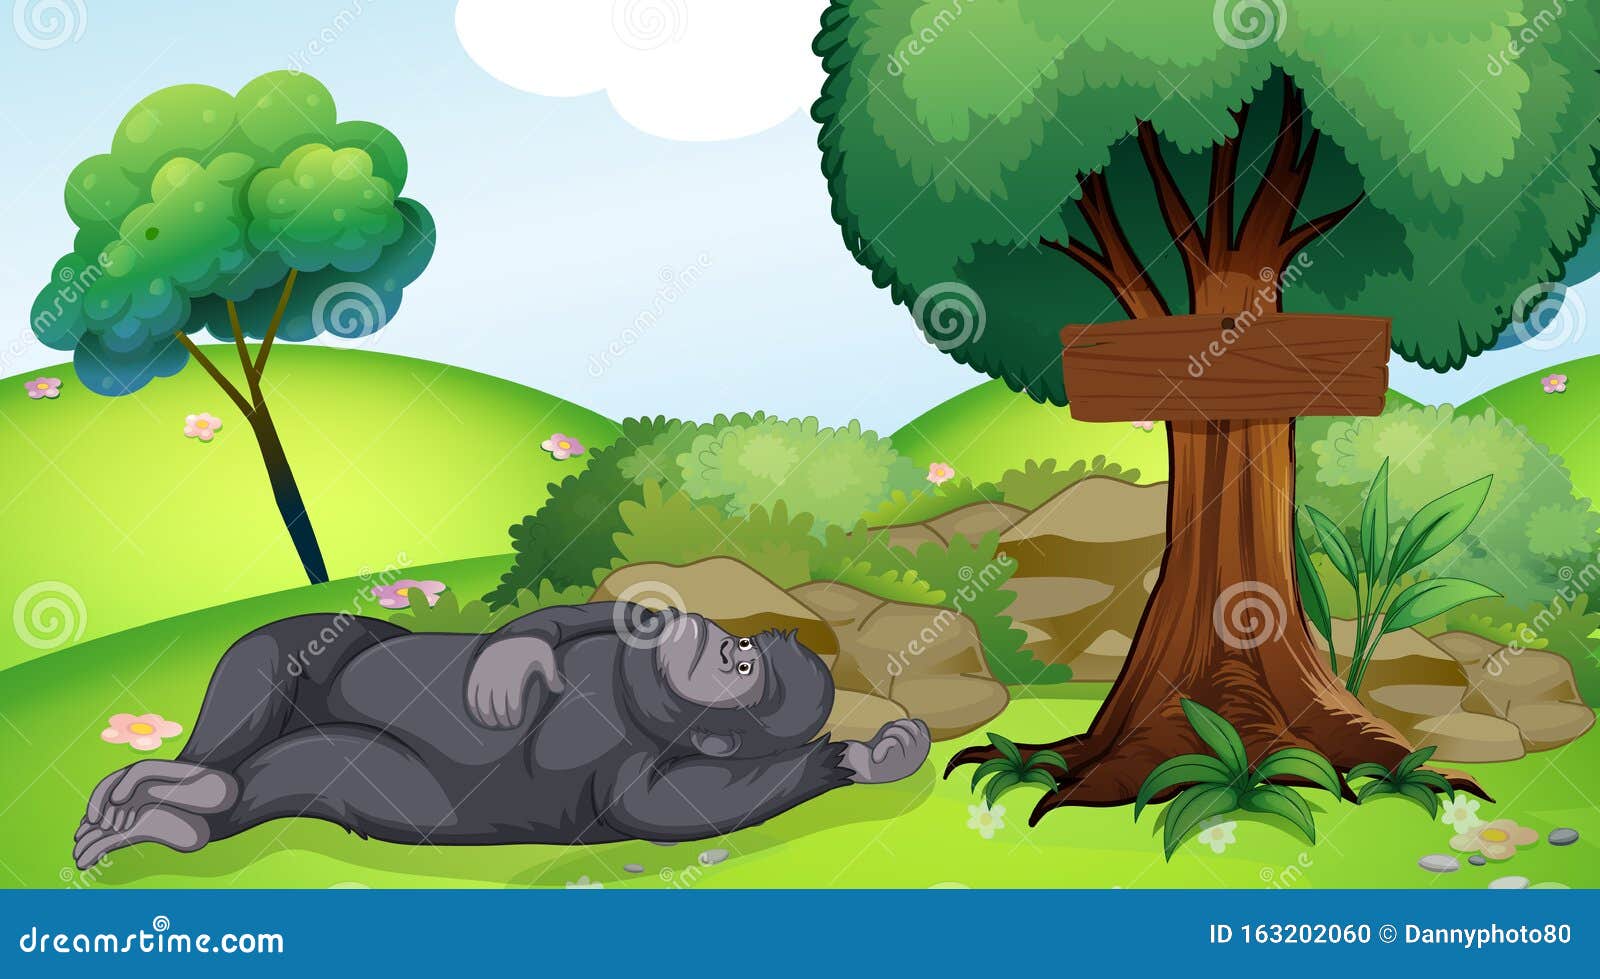 壁纸 大猩猩睡觉 3840x2160 UHD 4K 高清壁纸, 图片, 照片